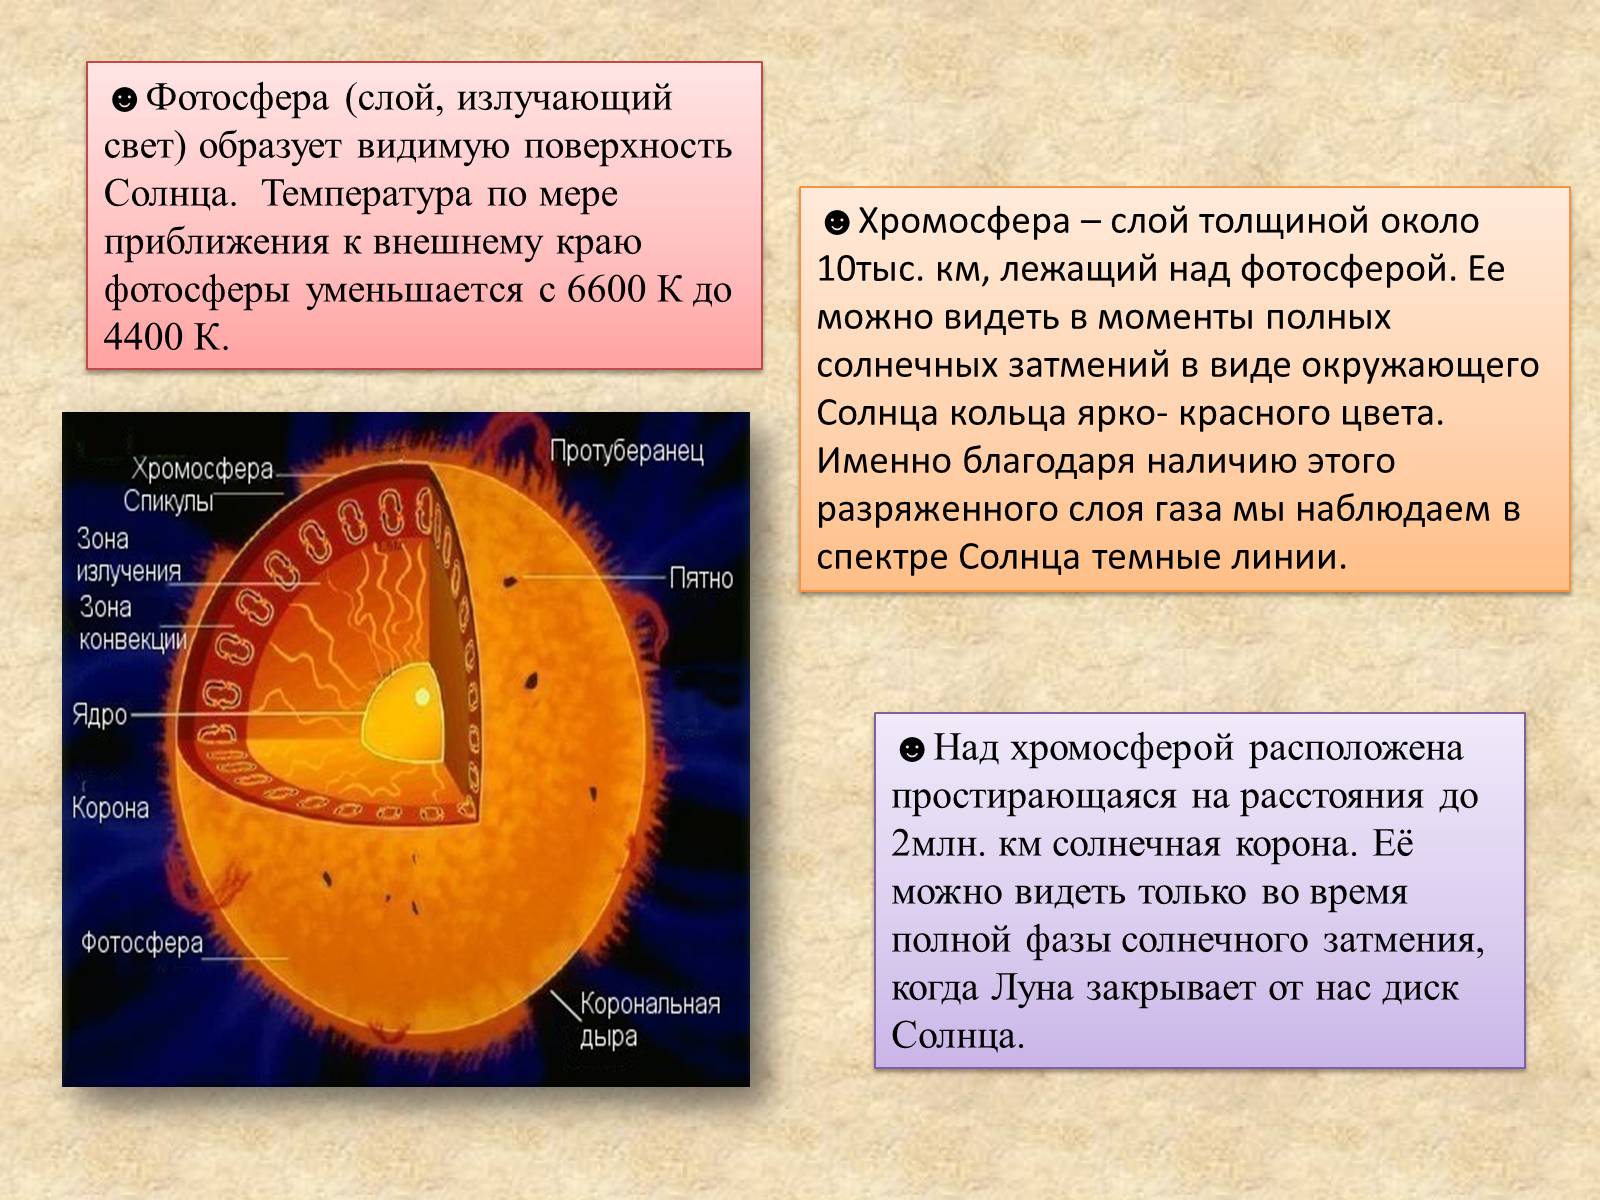 Температура солнечной короны. Таблица Фотосфера хромосфера Солнечная корона. Температура солнца. Температура поверхности солнца. Строение солнца.